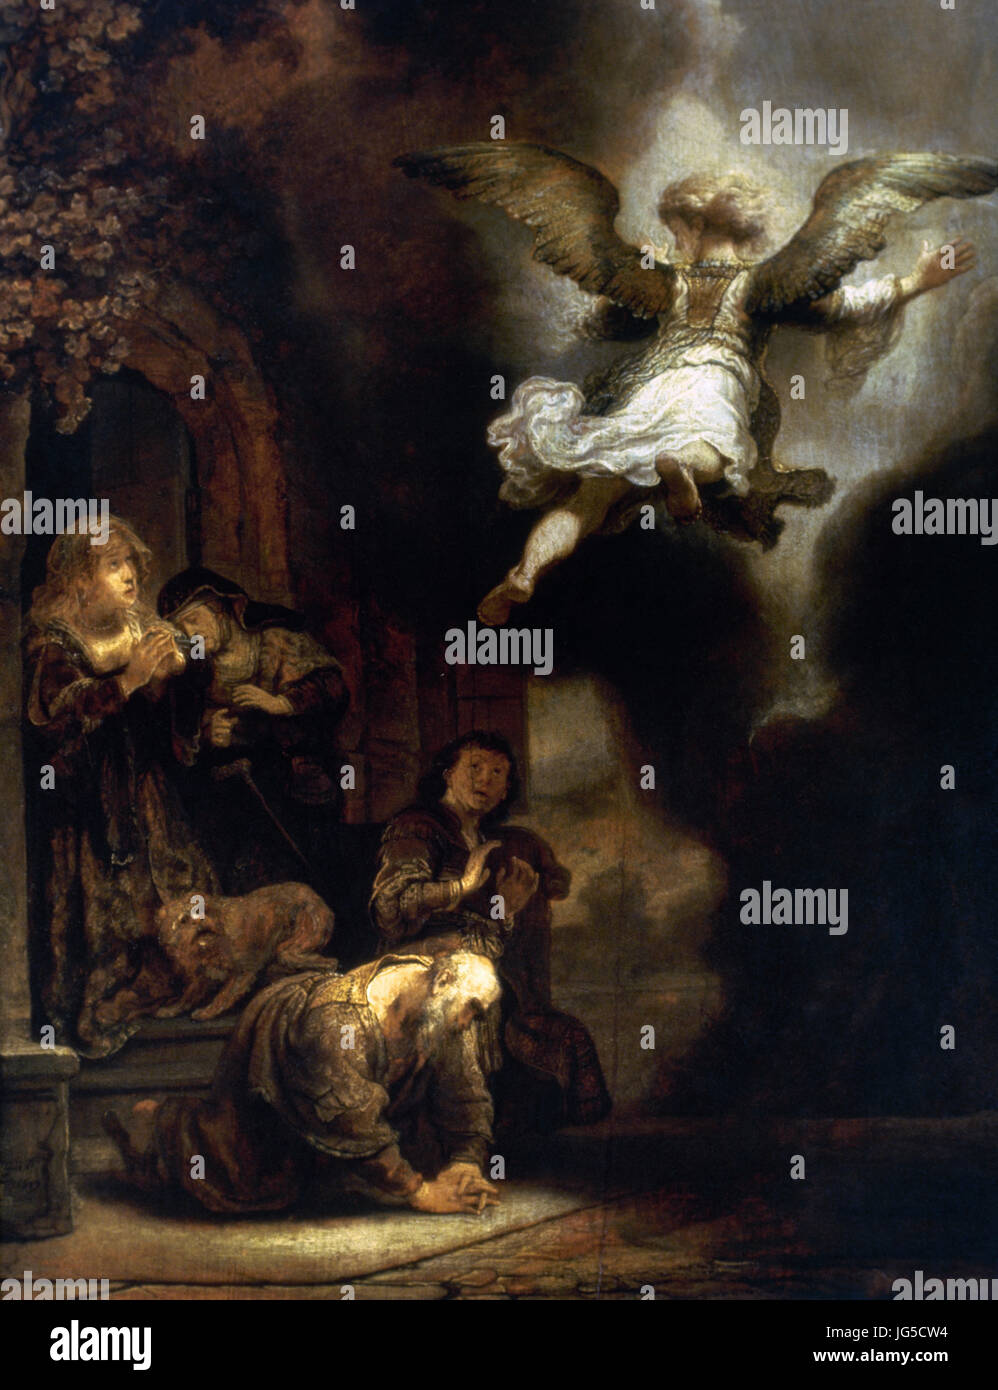 Rembrantdt (1606-1669). Niederländischer Maler. Die Erzengel Leaving Tobit und seiner Familie, 1637. Museum des Louvre. Paris. Frankreich. Stockfoto